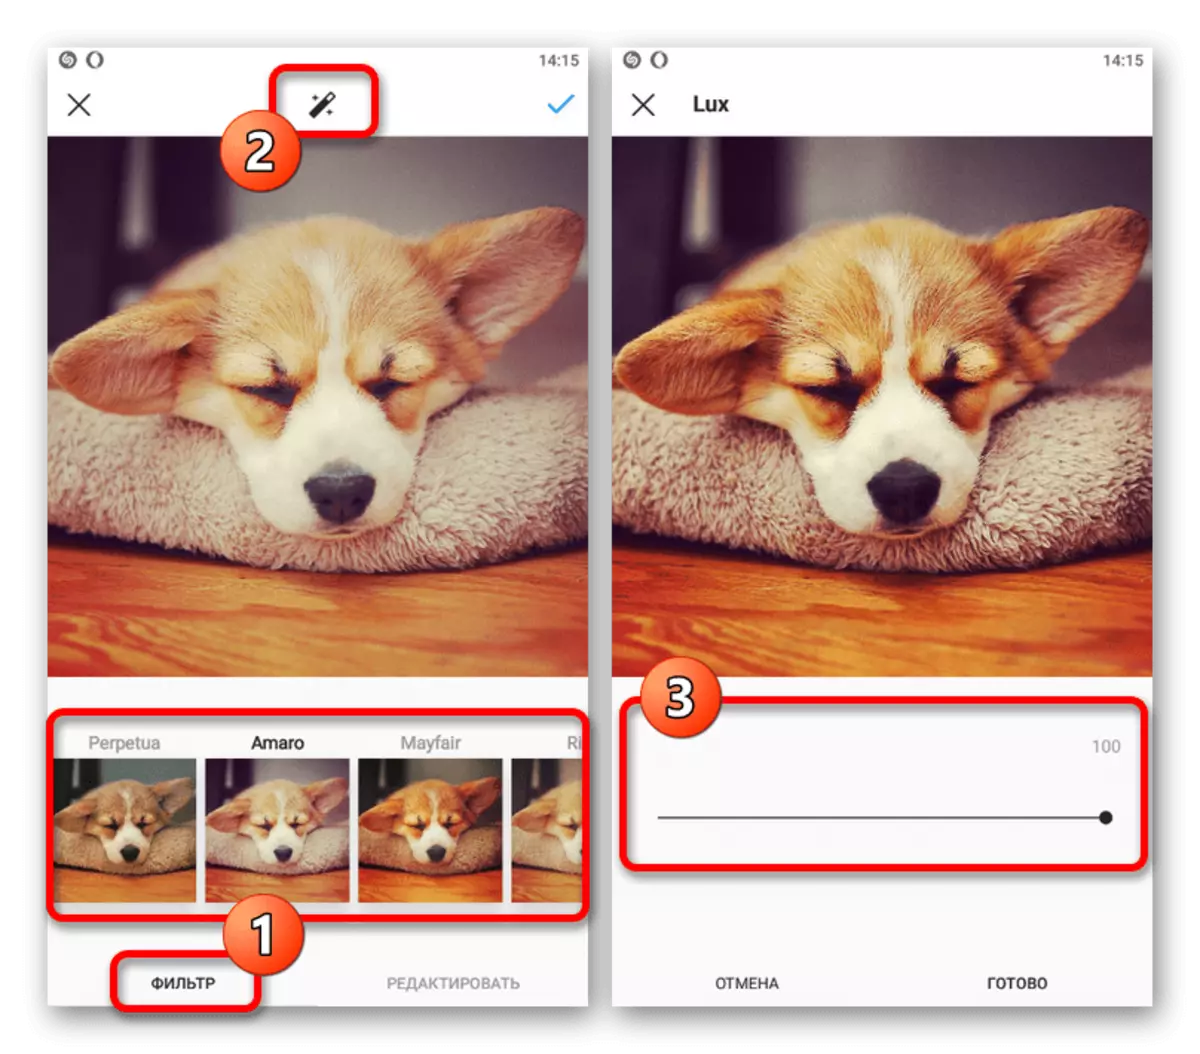 Példa a szűrők konfigurálására az Instagram Mobile alkalmazásban